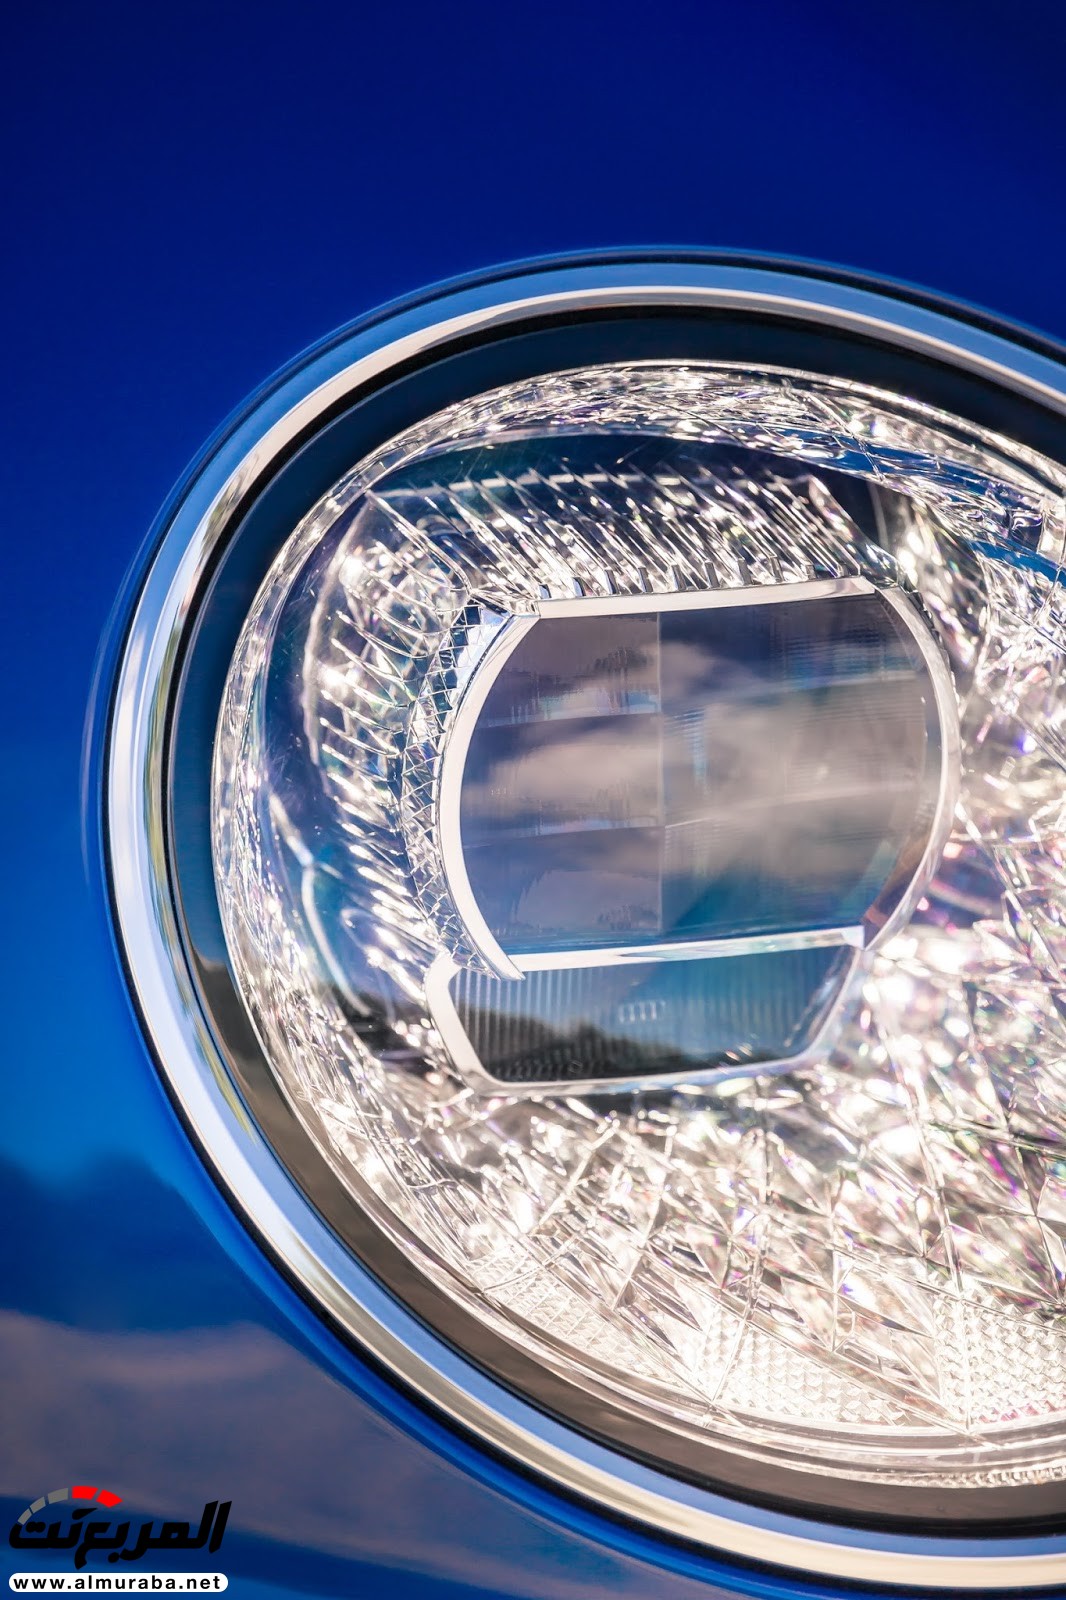 بنتلي كونتيننتال GT 2018 الجديدة كلياً "أفخم سيارة رياضية" تكشف نفسها رسمياً + صور ومواصفات 10